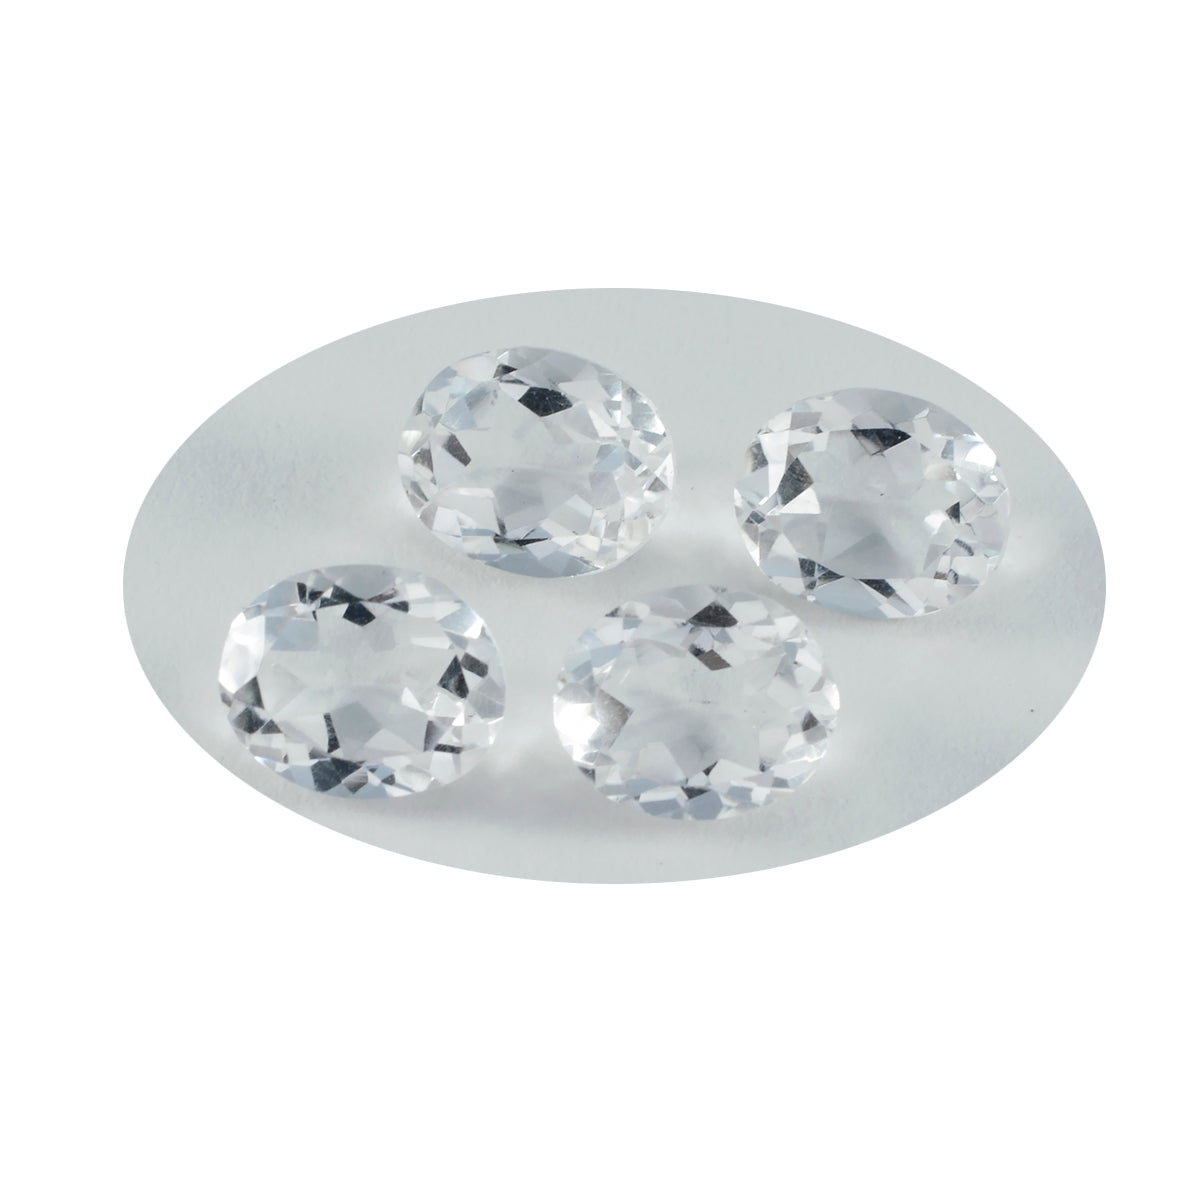 Riyogems 1 Stück weißer Kristallquarz, facettiert, 7 x 9 mm, ovale Form, gut aussehender Qualitätsstein